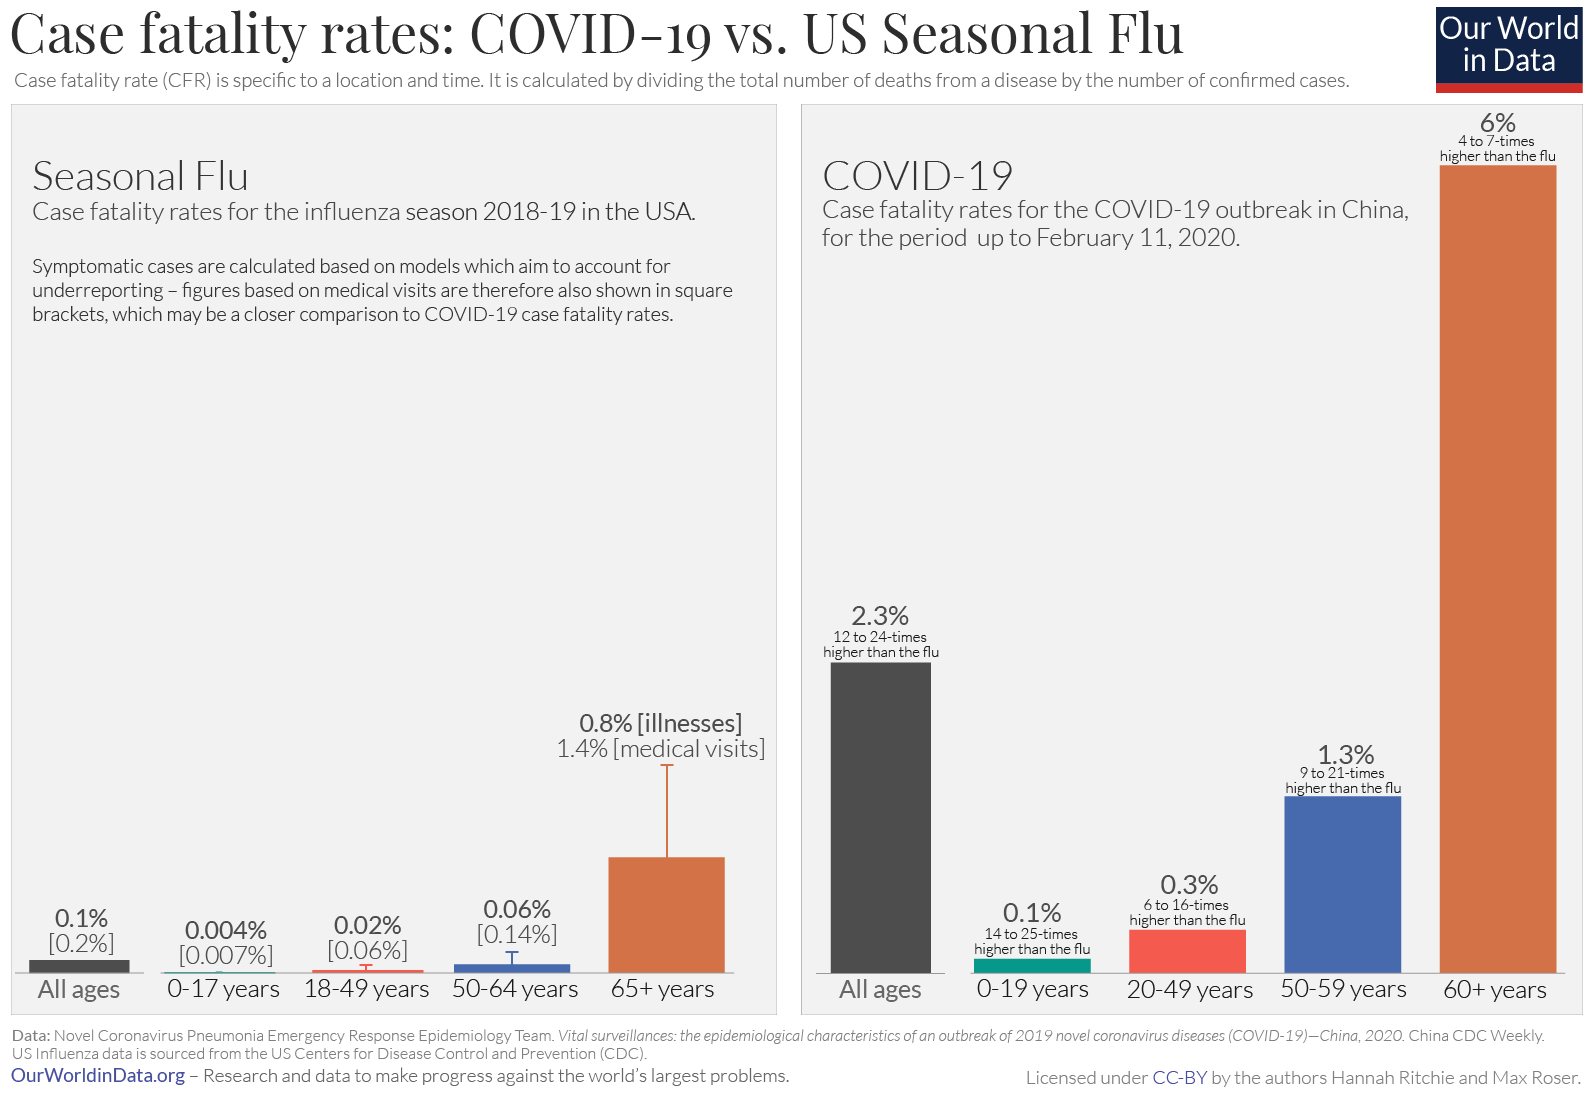 COVID-19 vs Seasonal Flu